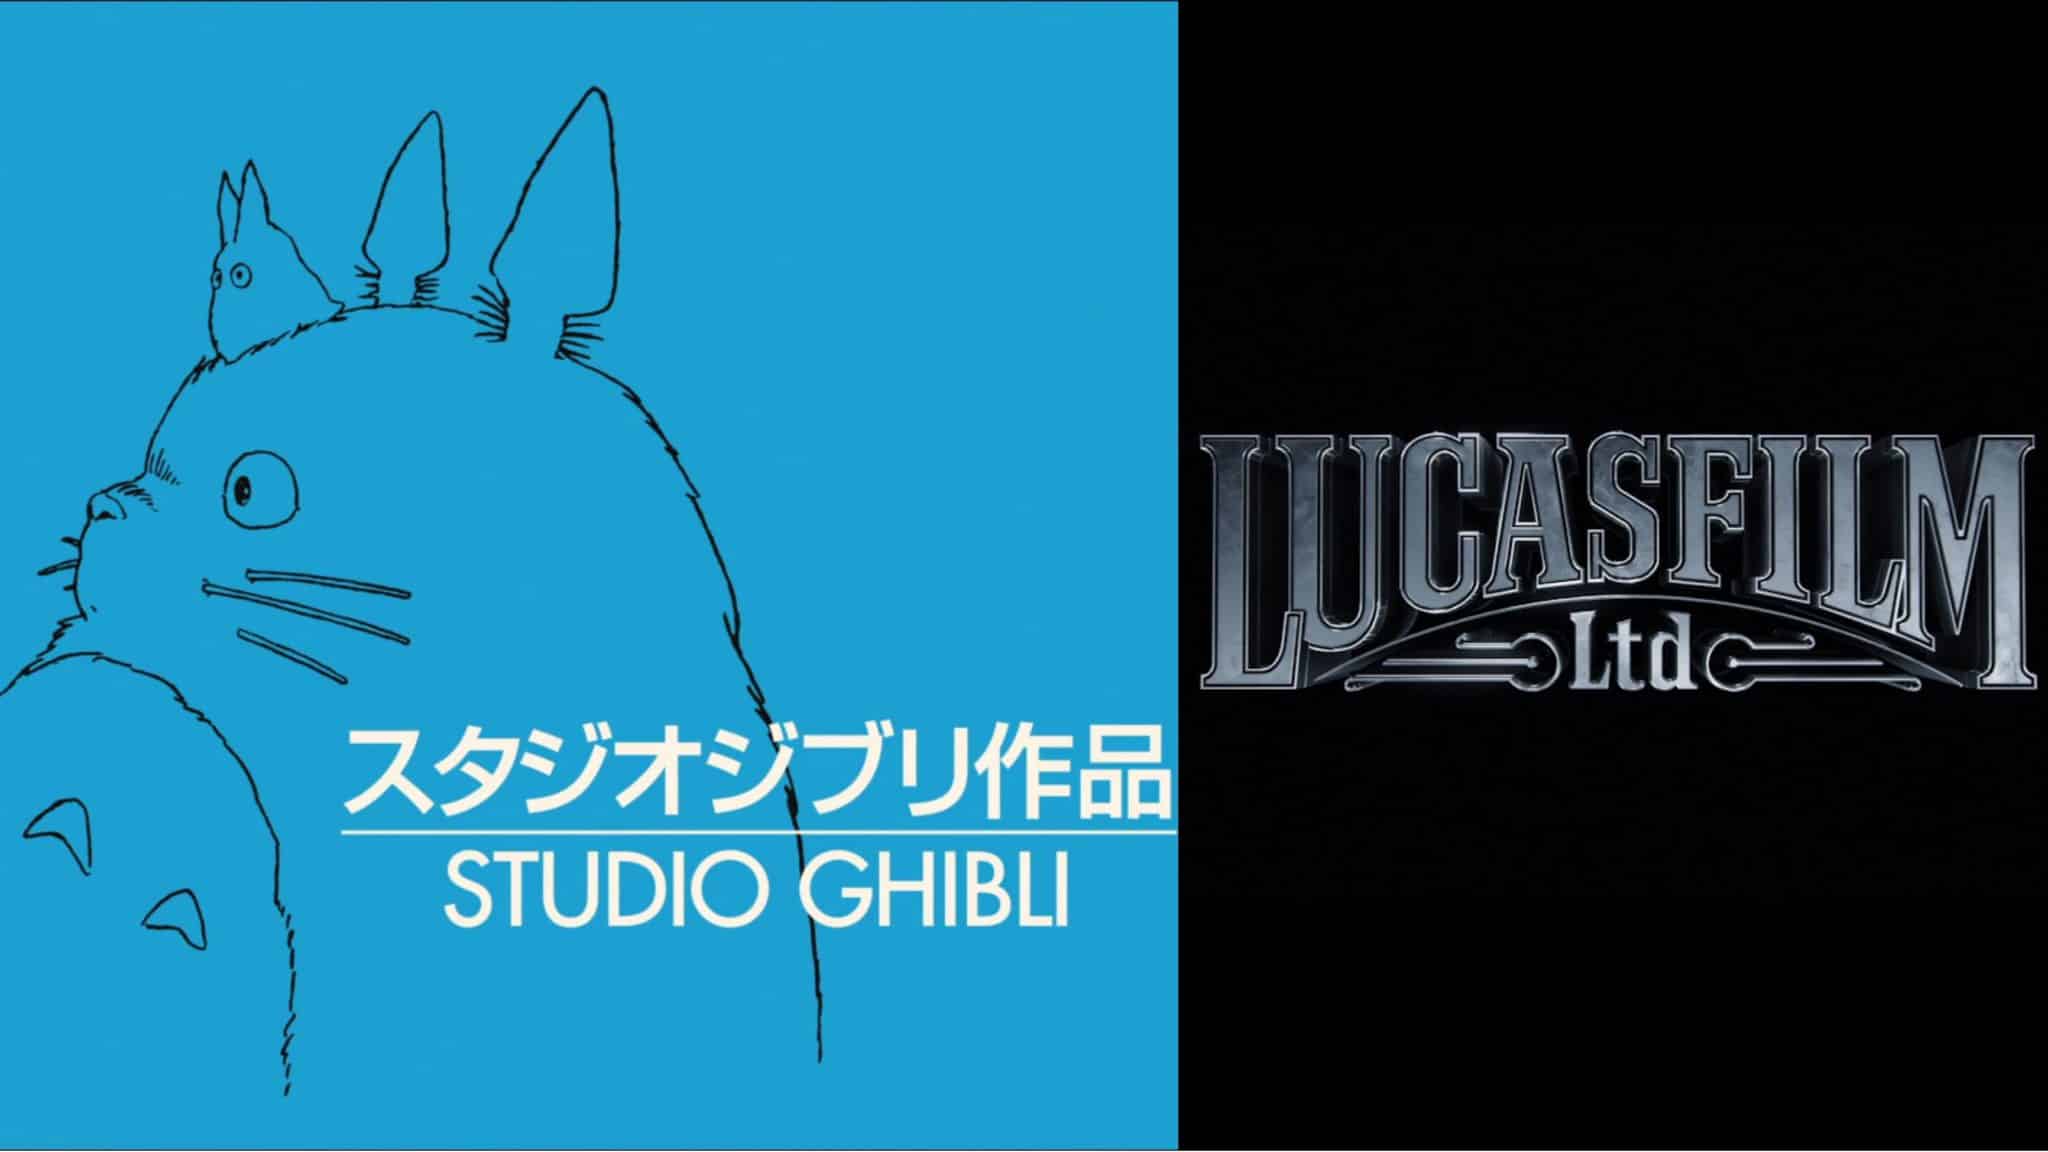 Novo filme do Studio Ghibli chega aos cinemas em 2023 - GKPB - Geek  Publicitário